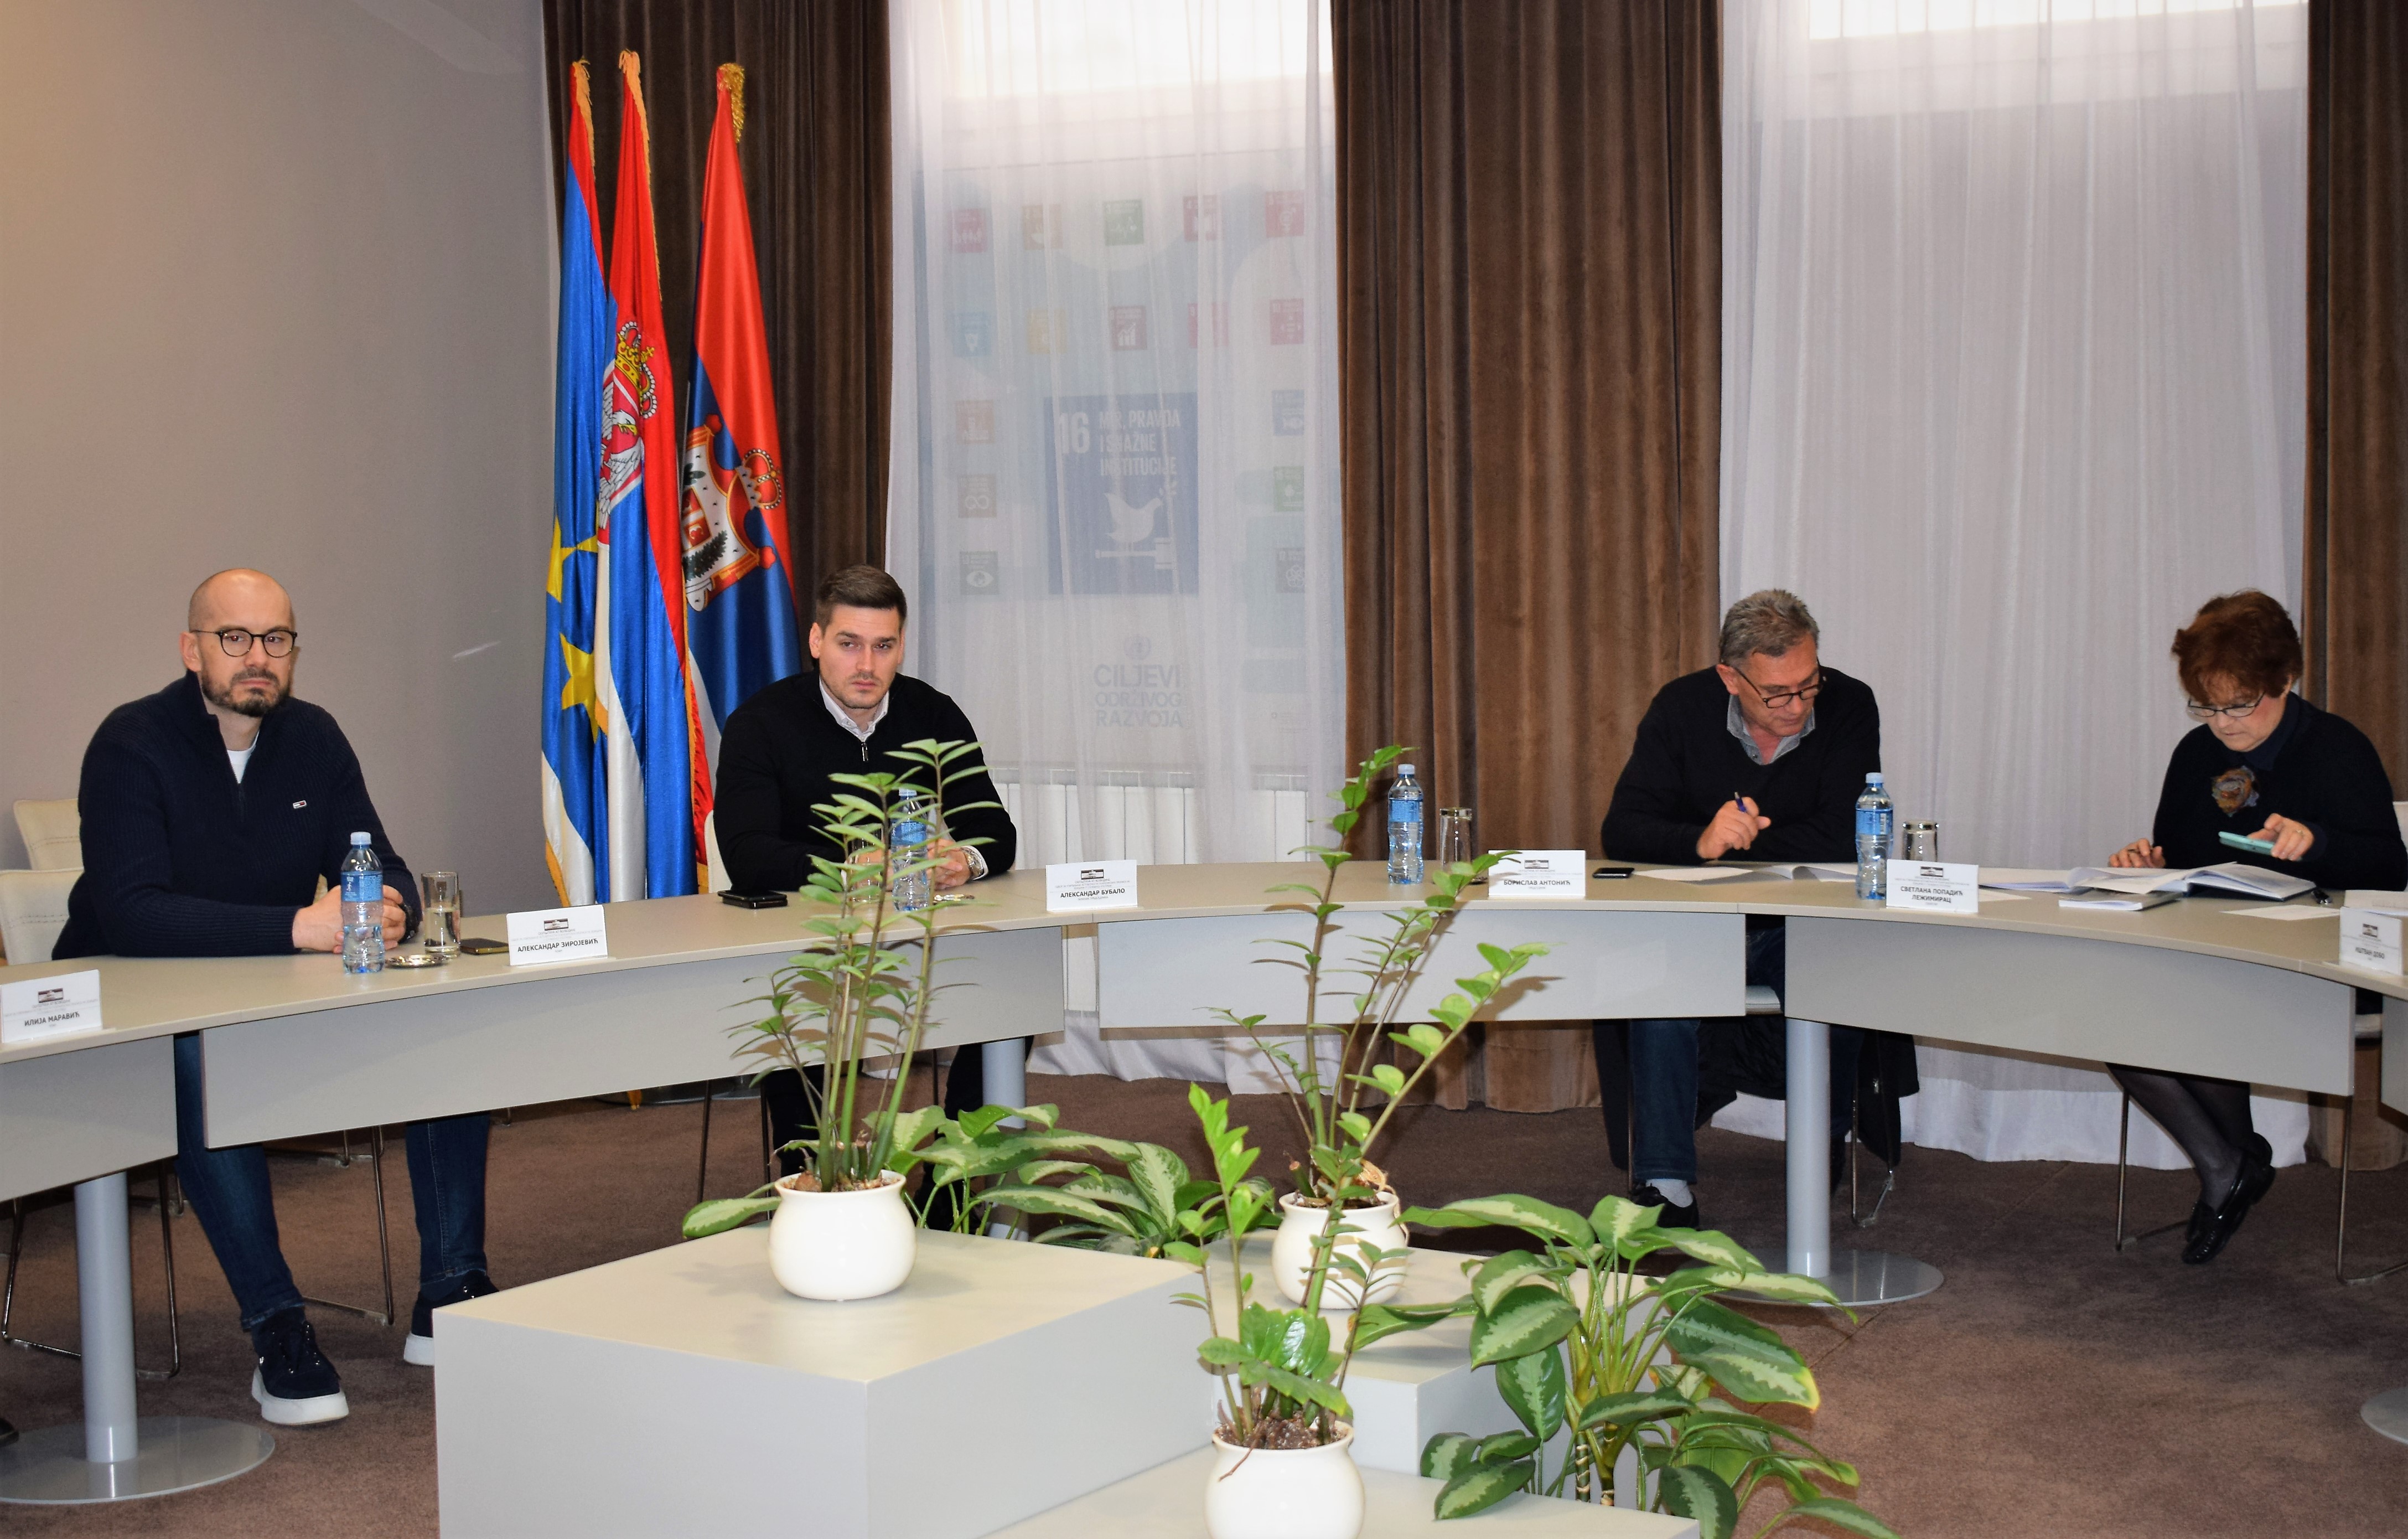 Održana sednica Odbora za utvrđivanje istovetnosti pokrajinskih propisa na jezicima u službenoj upotrebi